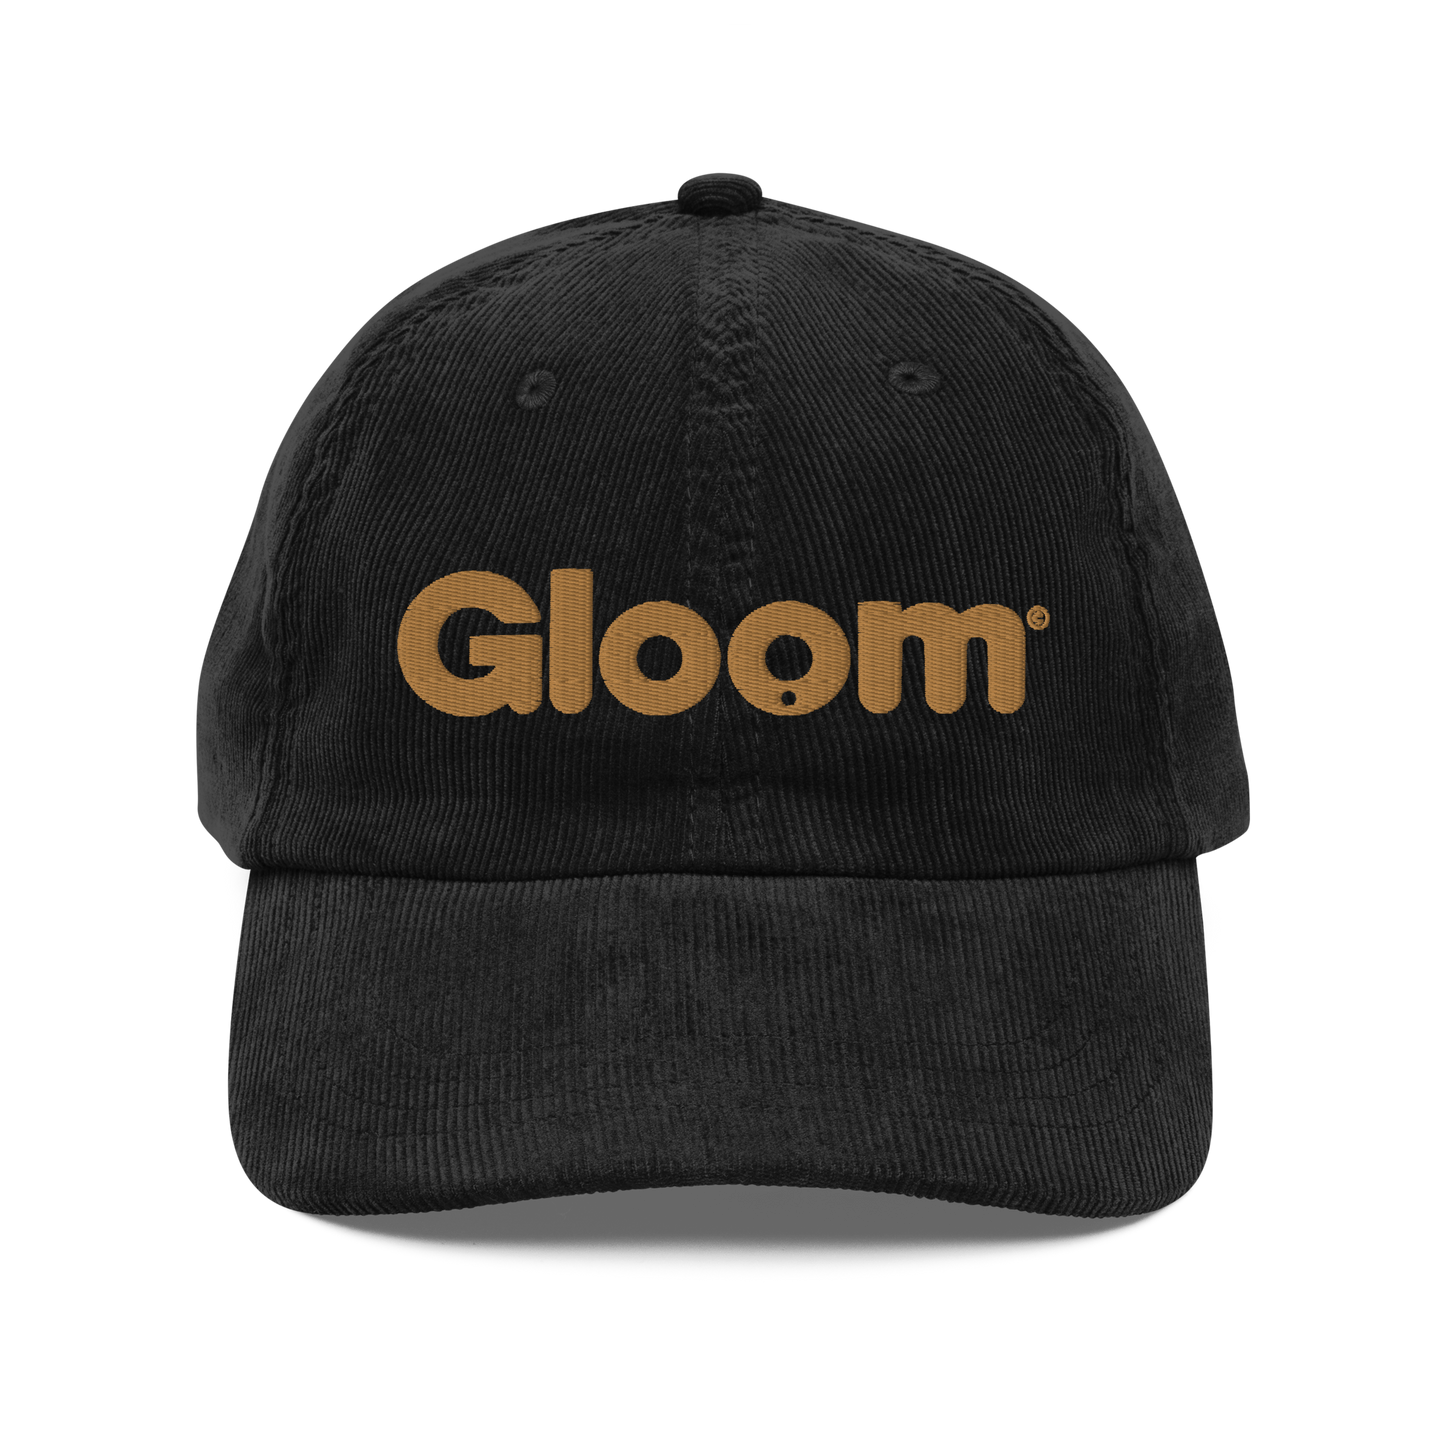 Gloom Legacy Corduroy Cap